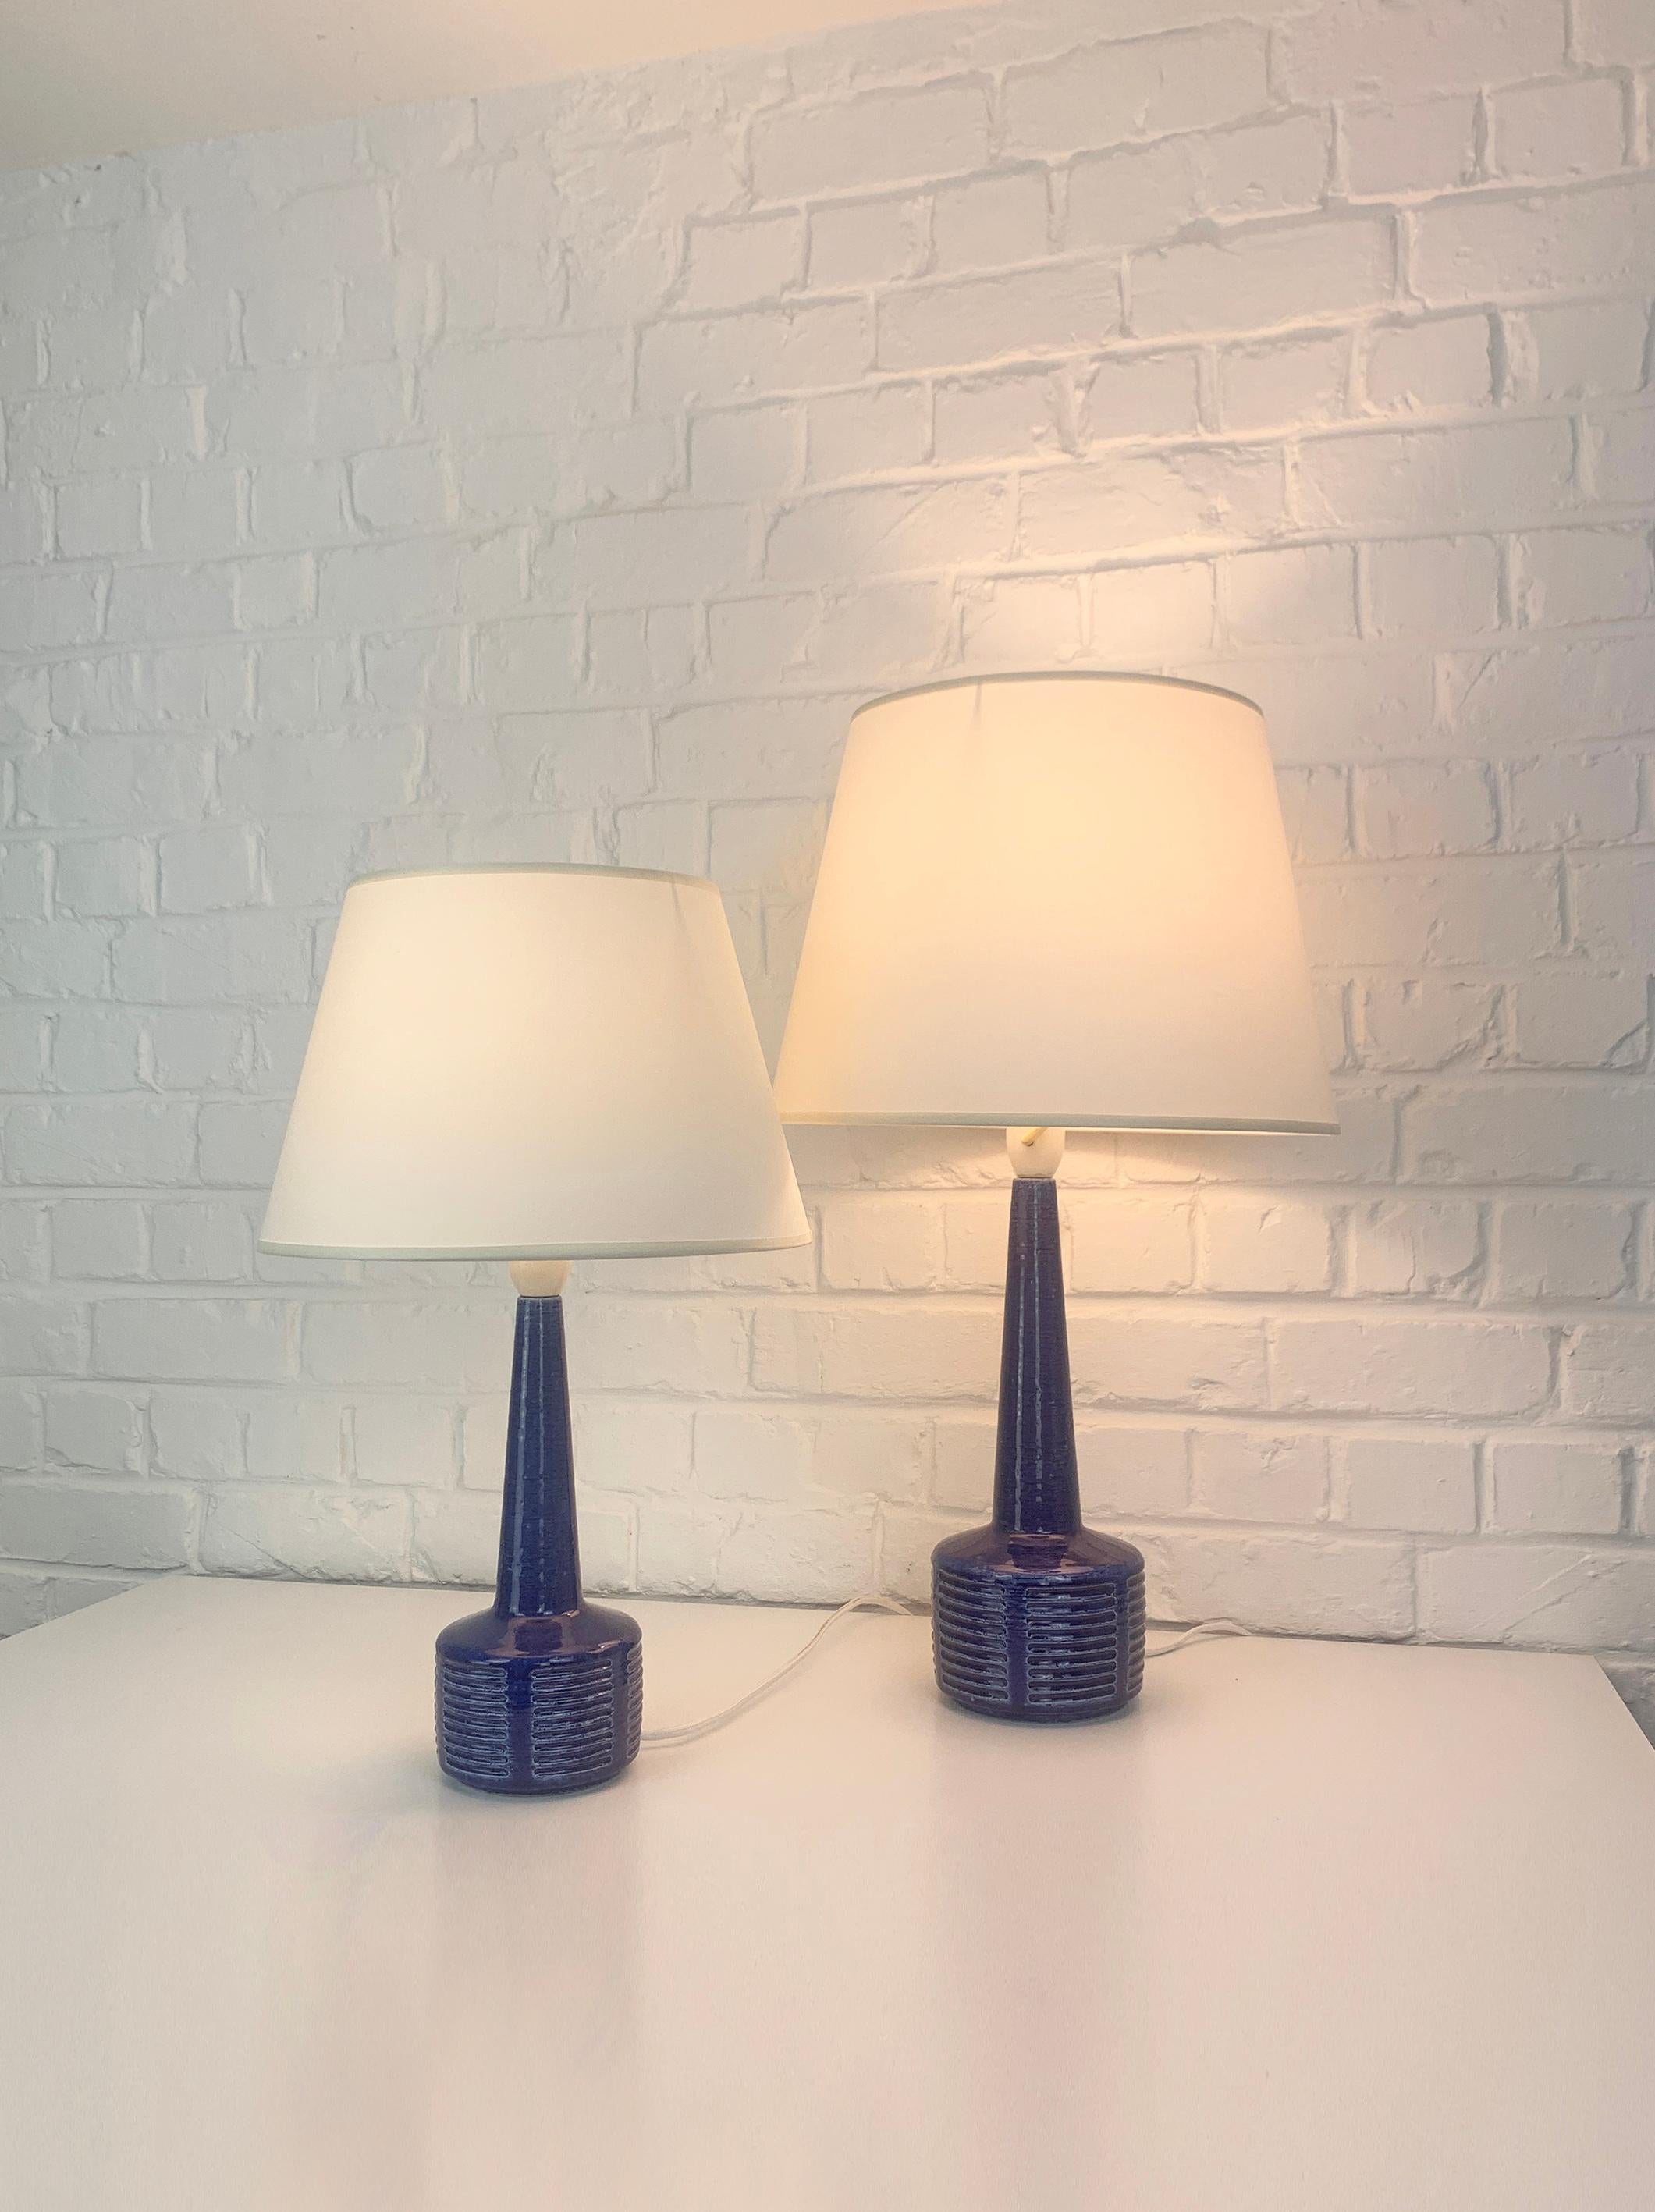 Paar Tischlampen aus Steingut, Modell DL34 und DL35, hergestellt von Palshus (Dänemark). 

Die Lampenfüße sind mit einer blauen Glasur und einem eingeprägten Muster versehen. Der Schamotteton verleiht eine natürliche und lebendige Oberfläche. Beide